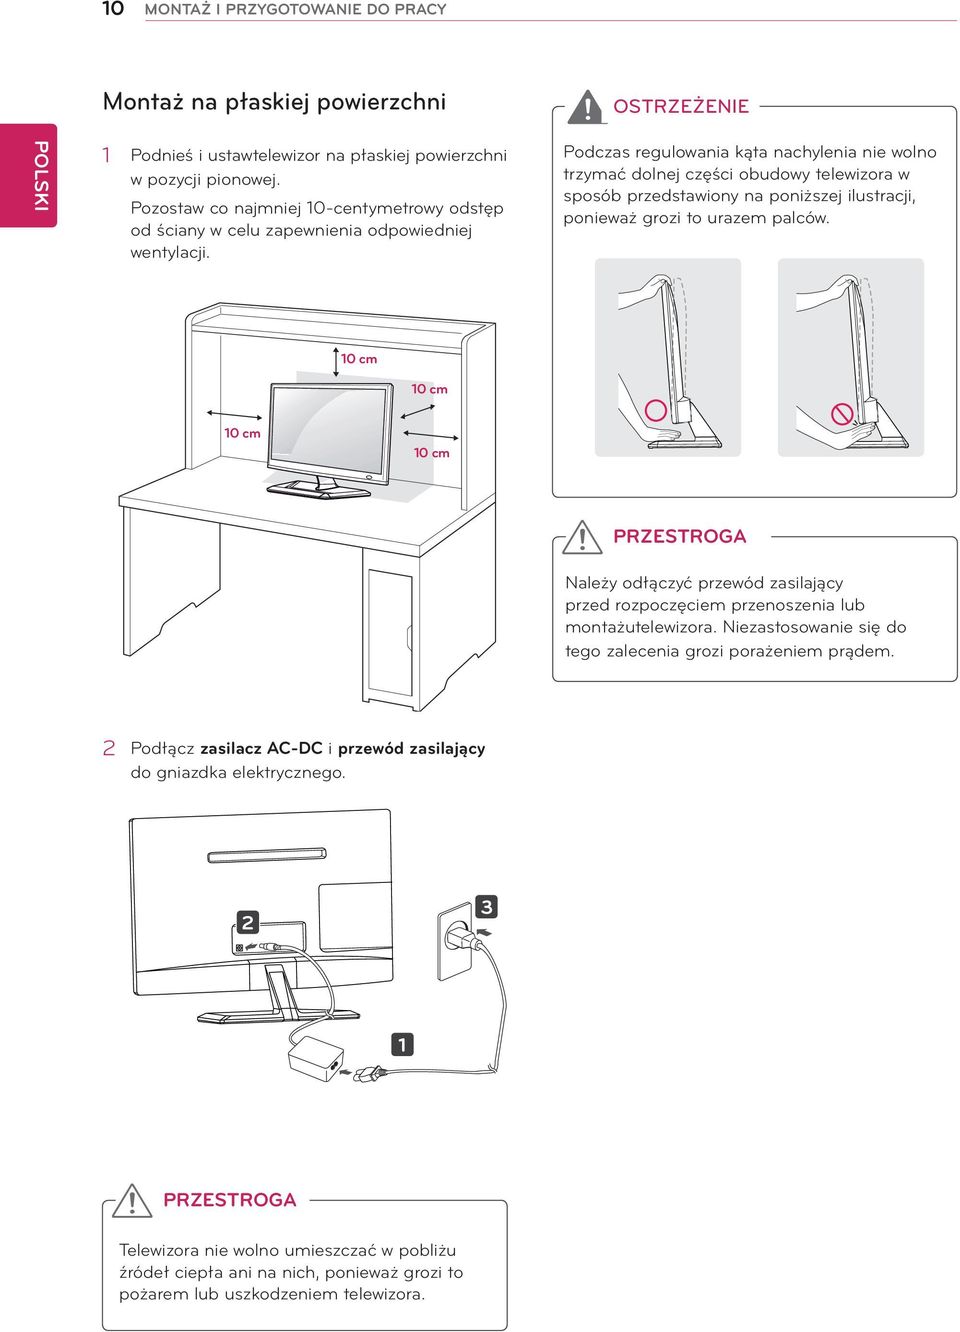 Podczas regulowania kąta nachylenia nie wolno trzymać dolnej części obudowy telewizora w sposób przedstawiony na poniższej ilustracji, ponieważ grozi to urazem palców.